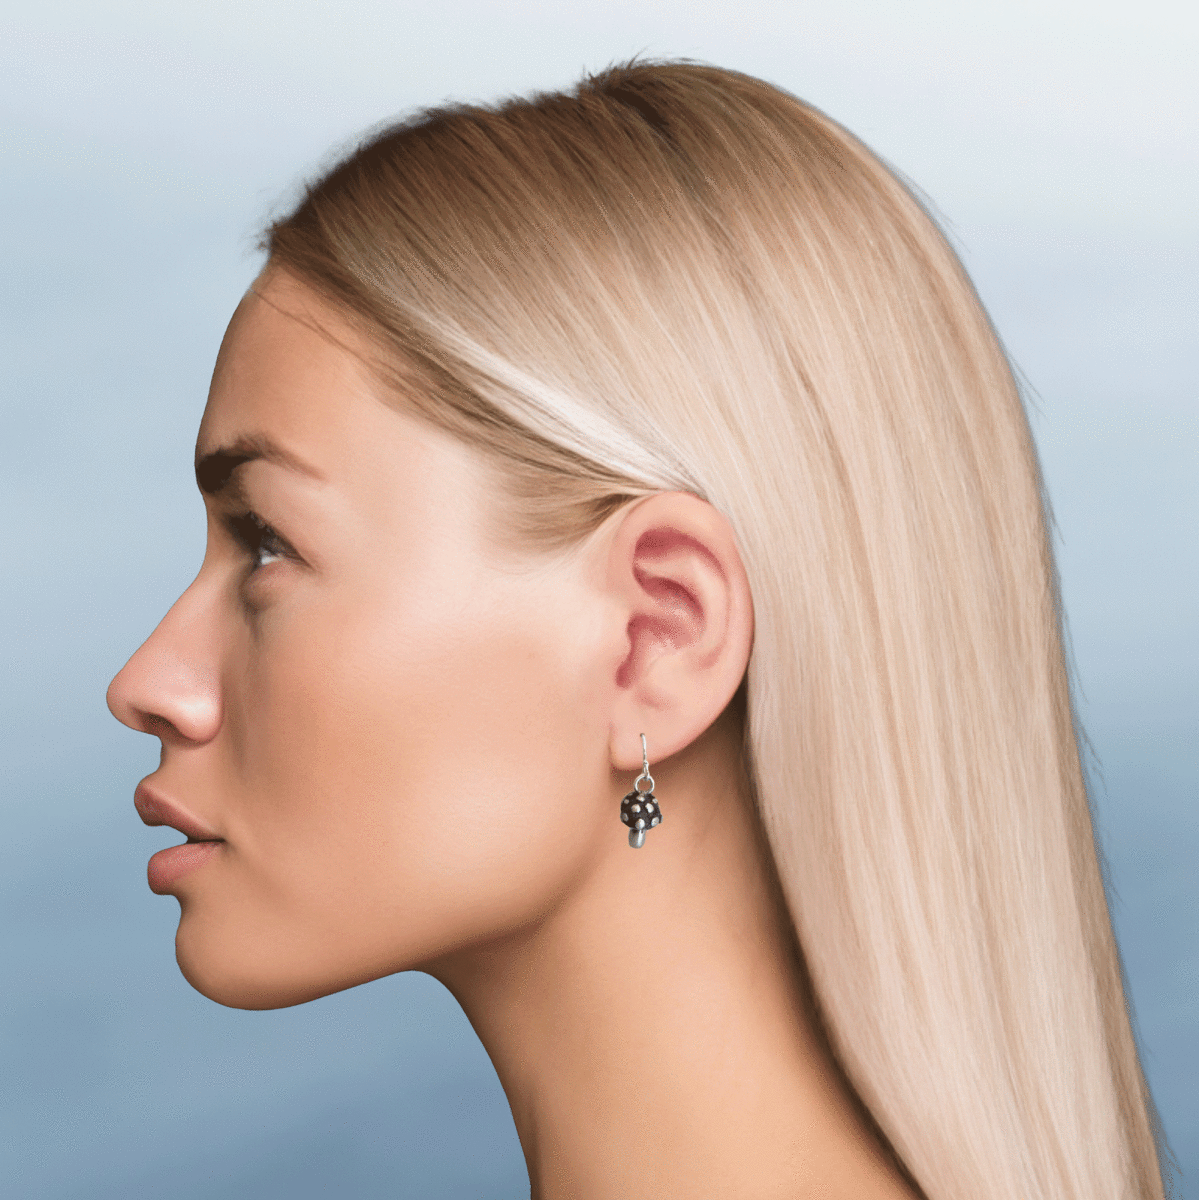 Mushroom Hook Earrings in Sterling Silver - Luxe Design Jewellery